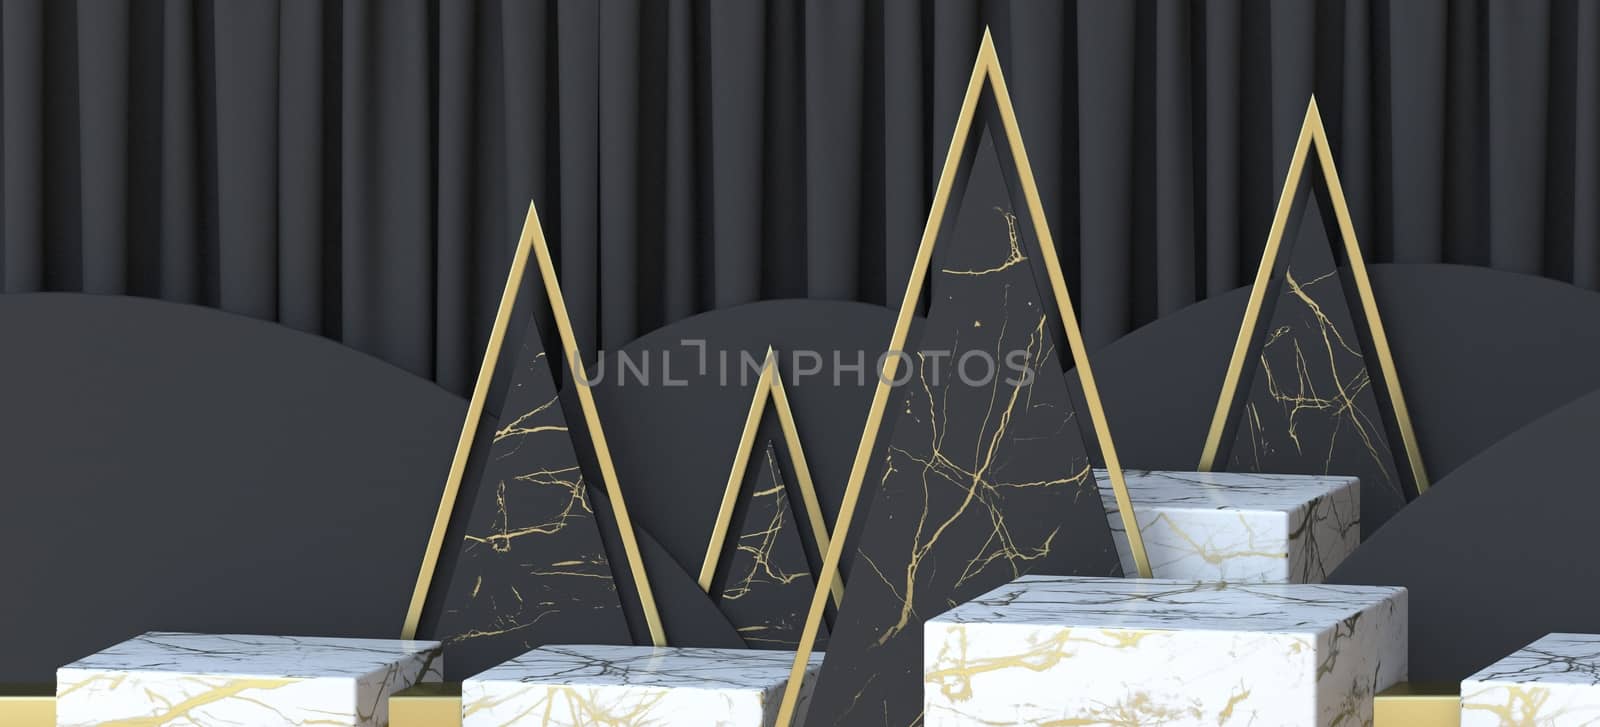 Abstract background Christmas landscape 3D render illustration on black background